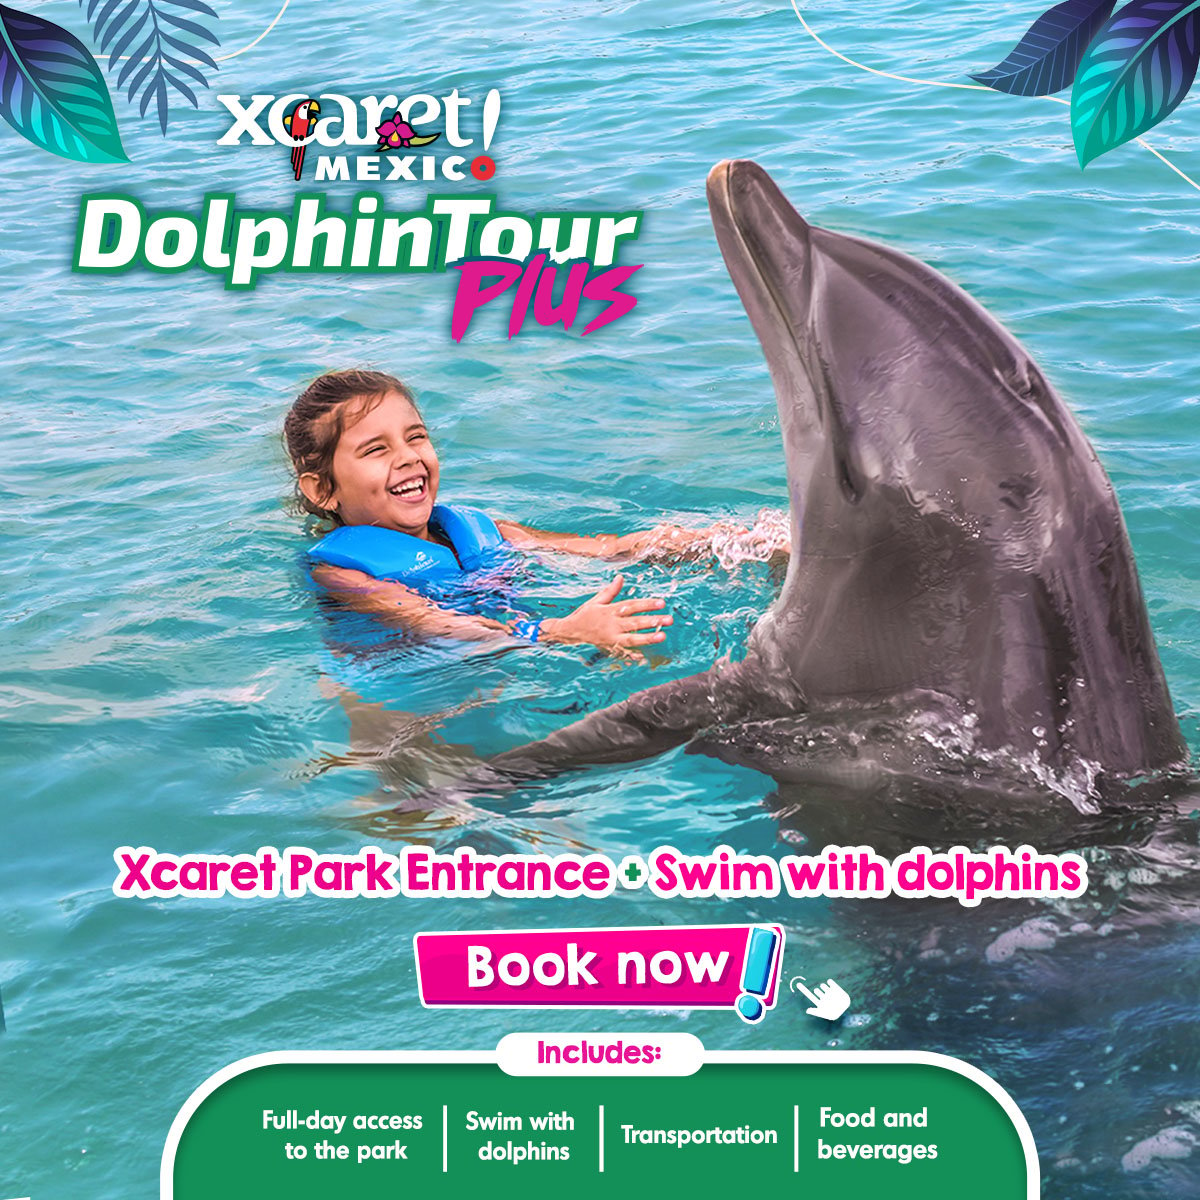 Swim with dolphins Delphinus Xcaret